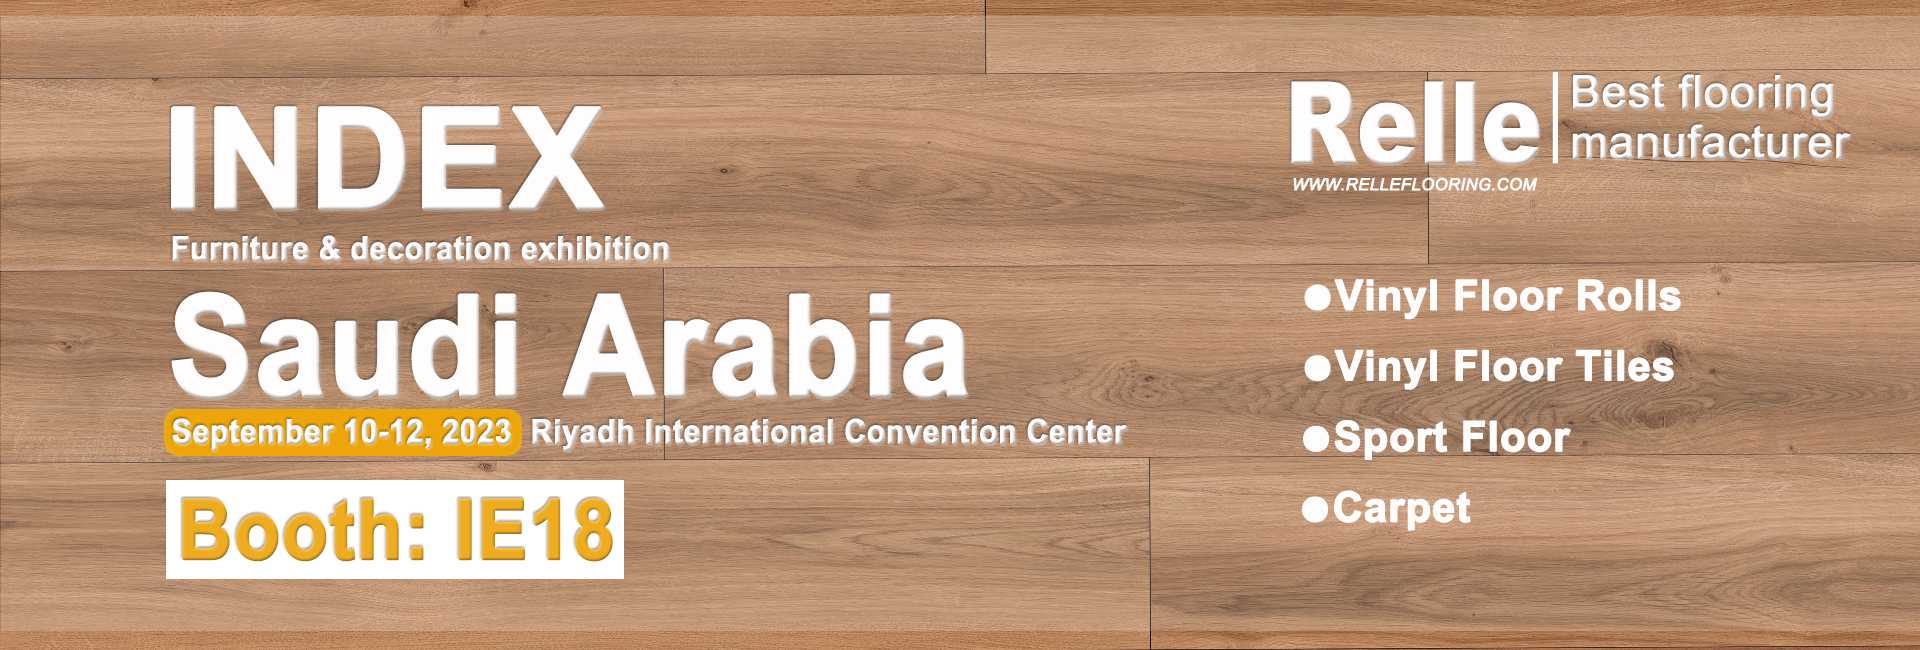 Saudi Arabia Furniture & decoration exhibition INDEX  